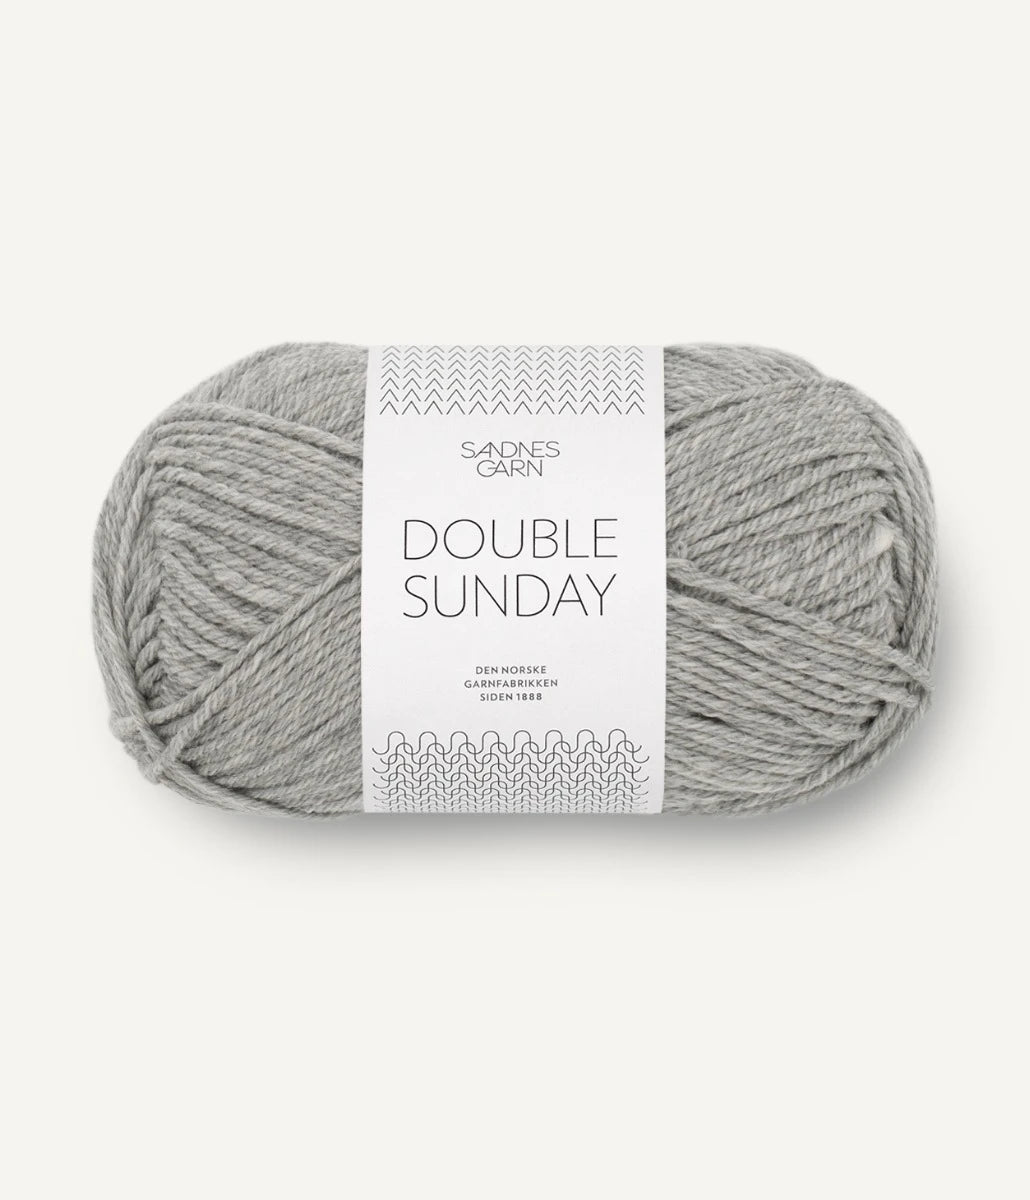 Kuvassa on Sandnes Garn Double Sunday -lanka (yarn) värissä Gråmelert.